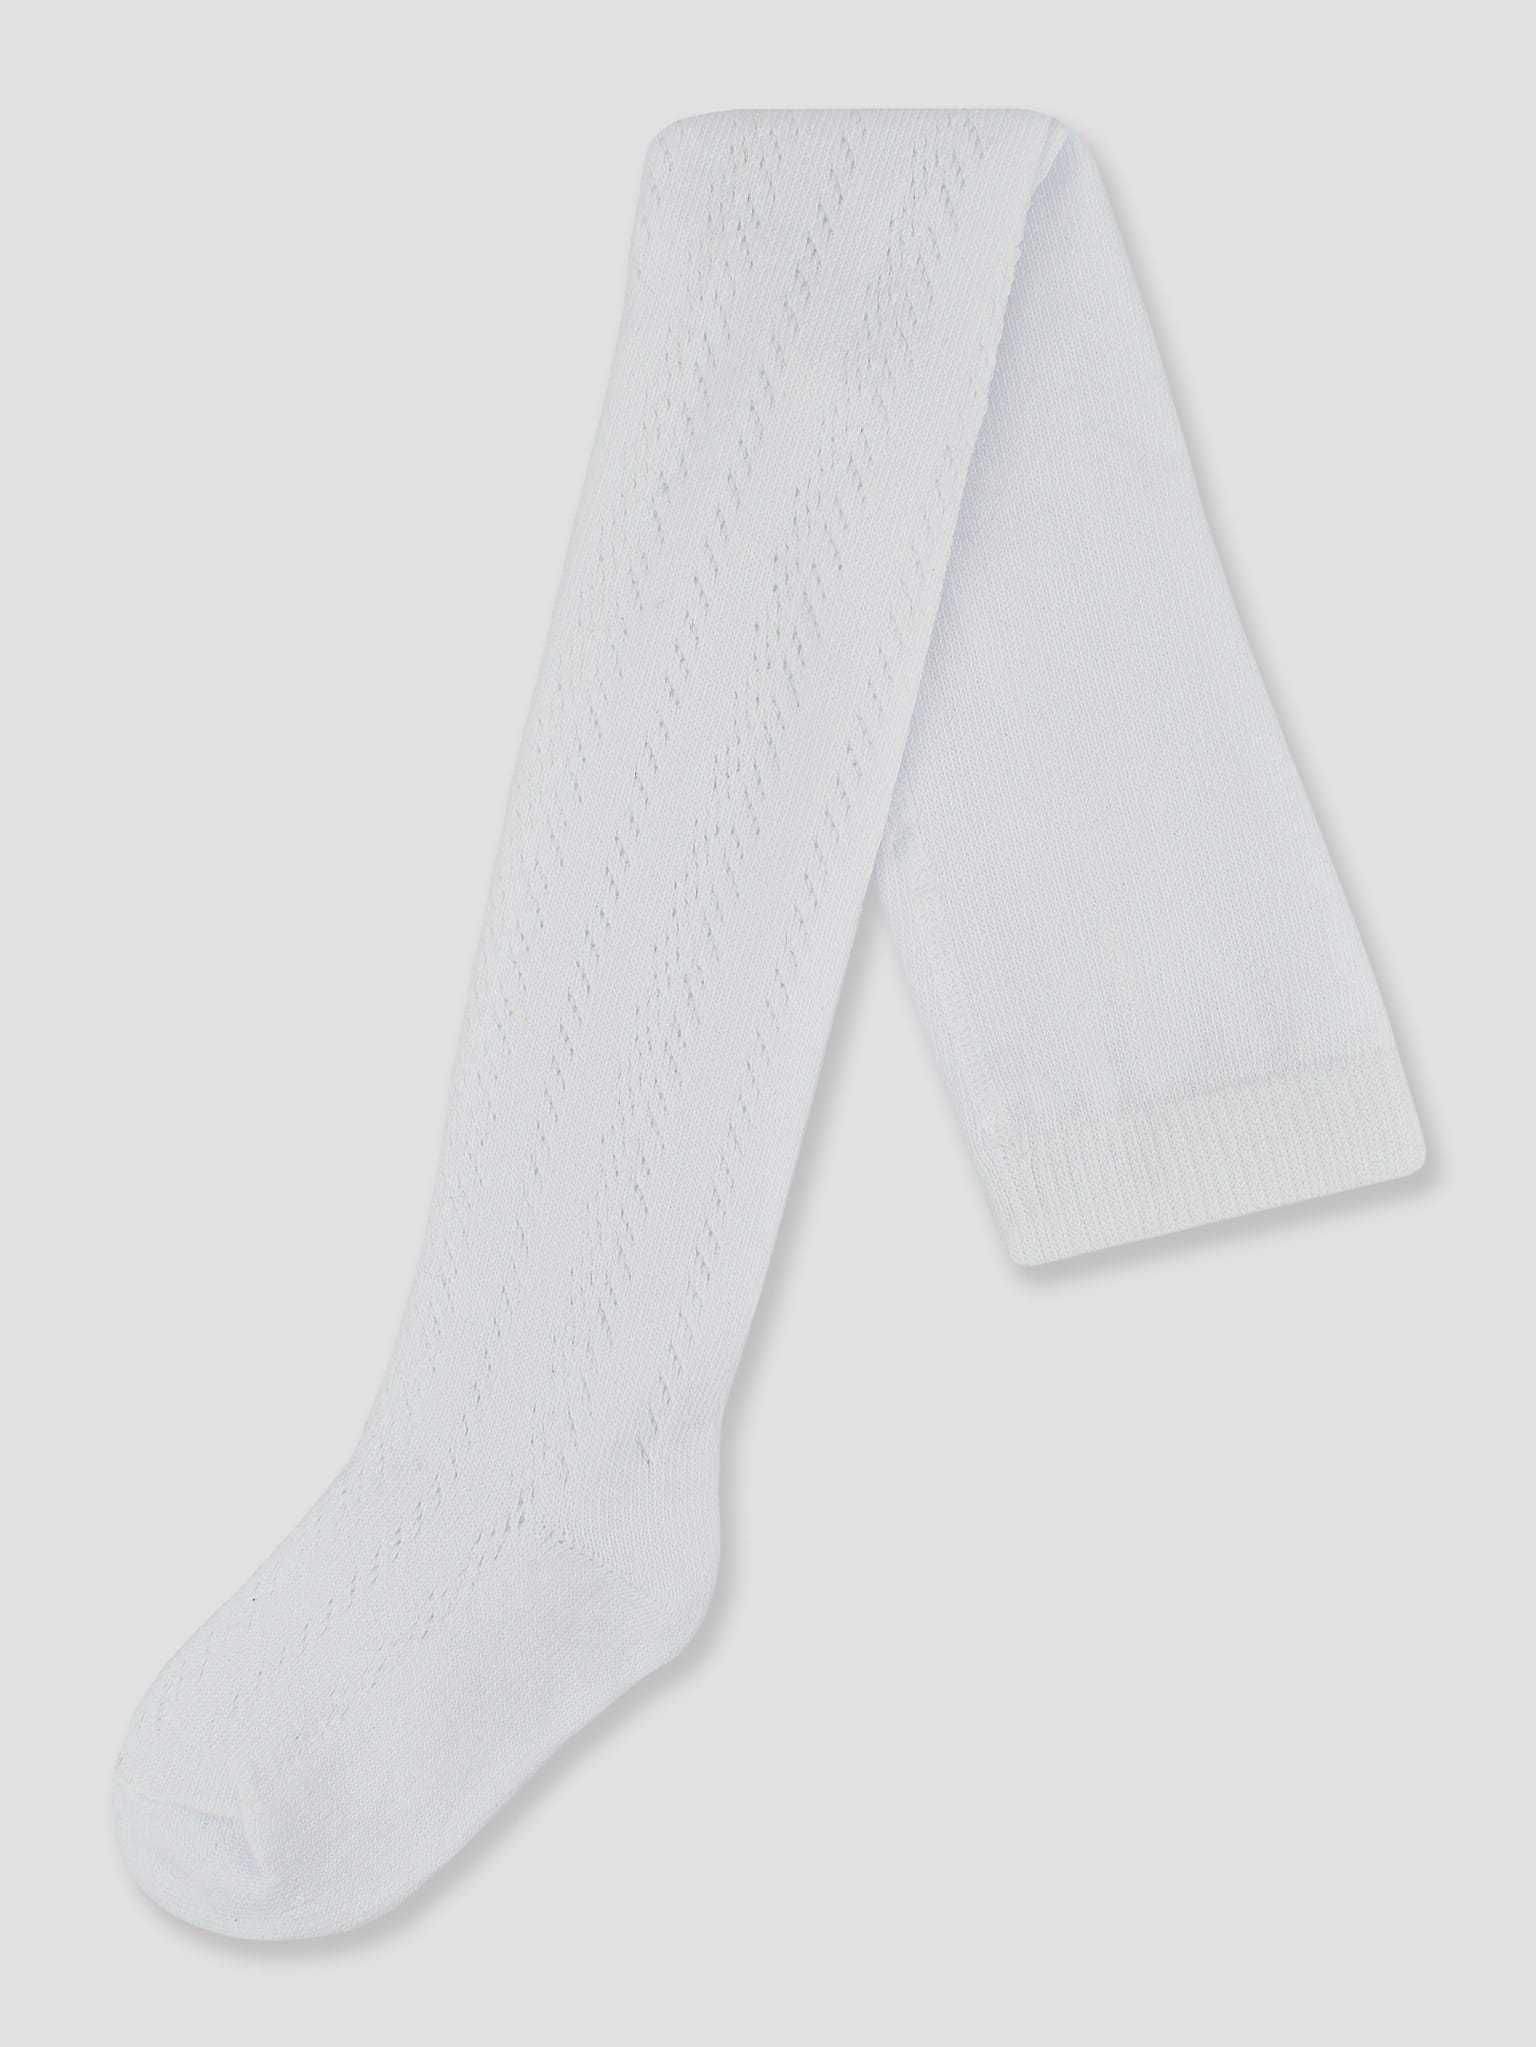 Rajstopy dziewczęce bawełniane białe ażurowe 104-110 cm Noviti